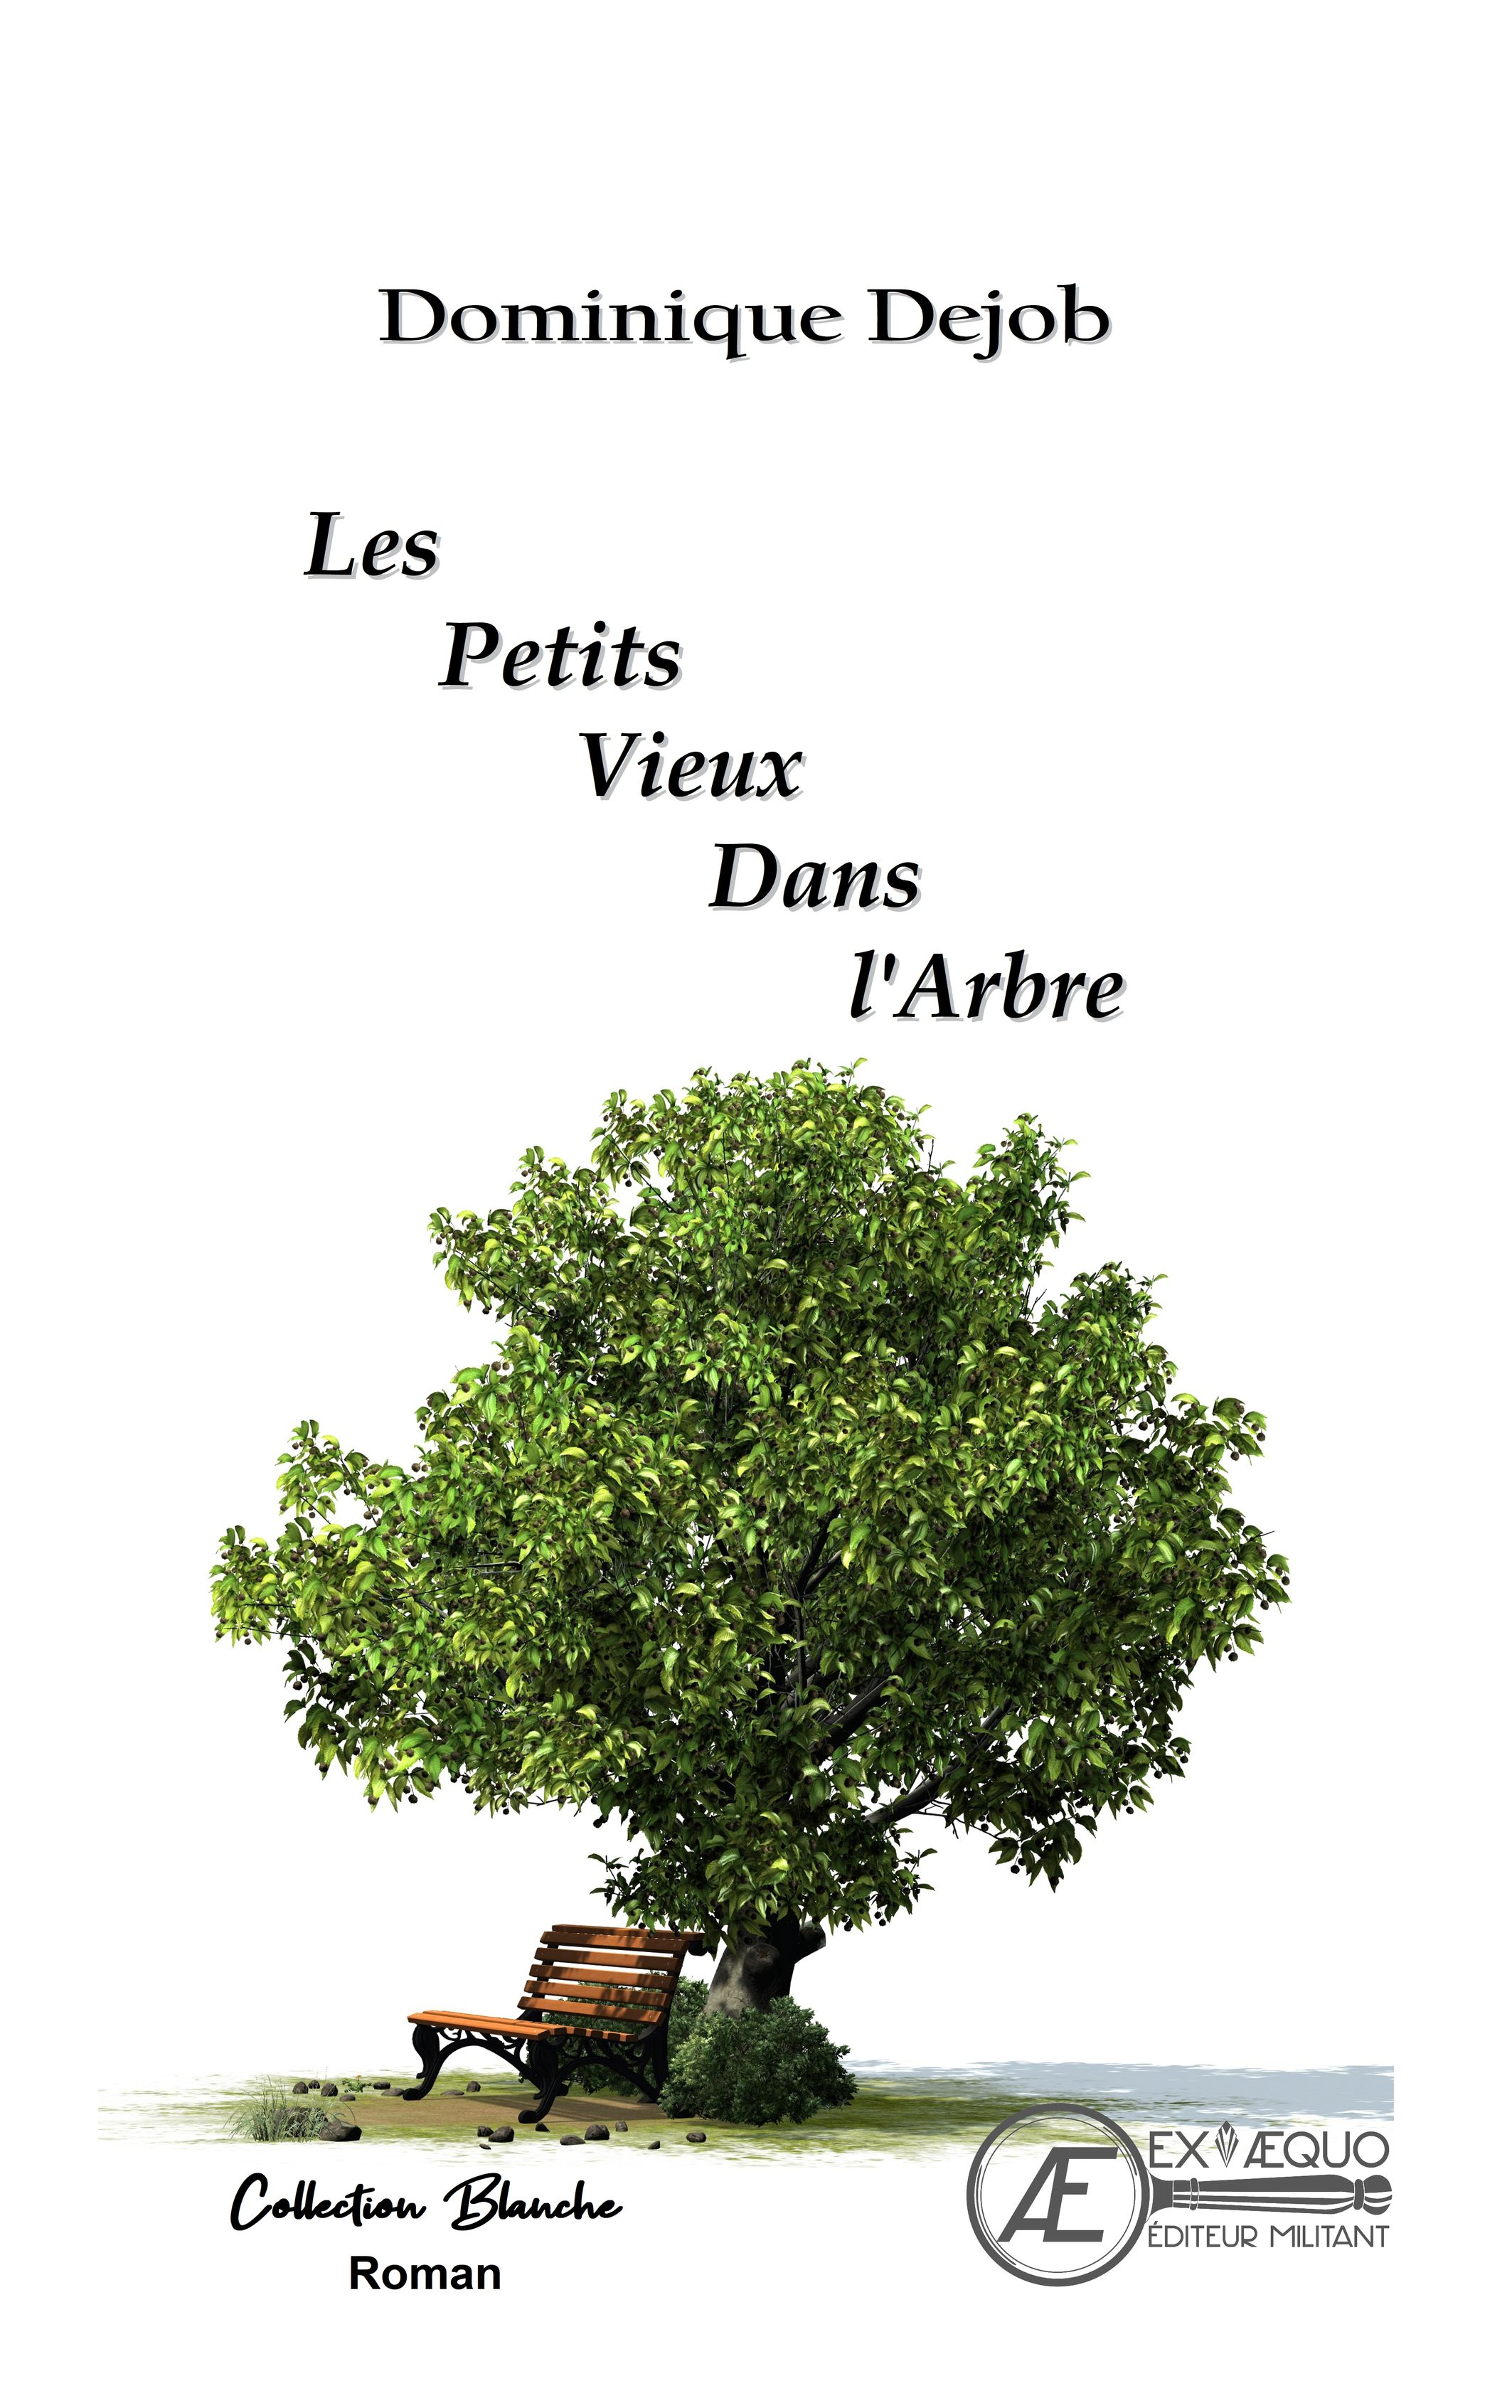 You are currently viewing Les petits vieux dans l’arbre, de Dominique Dejob